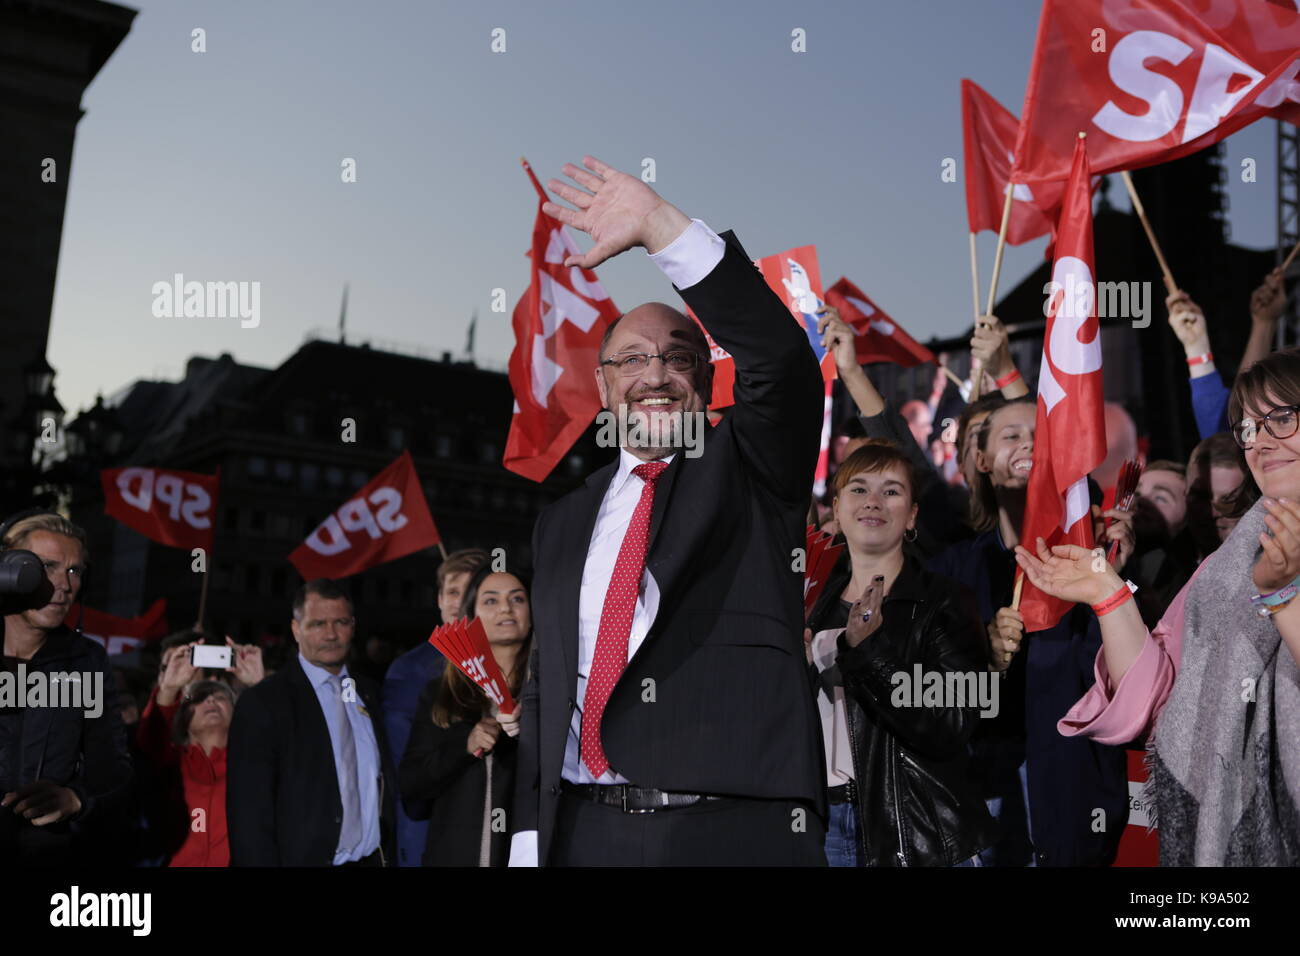 Berlino, Germania. Il 22 settembre, 2017. Martin Schulz onde in mezzo alla folla. Il candidato per il tedesco Chancellorship della SPD (partito socialdemocratico tedesco) è stata il principale oratore ad un rally di grandi dimensioni nel centro di Berlino, due giorni prima delle elezioni tedesche. Credito: SOPA Immagini limitata/Alamy Live News Foto Stock